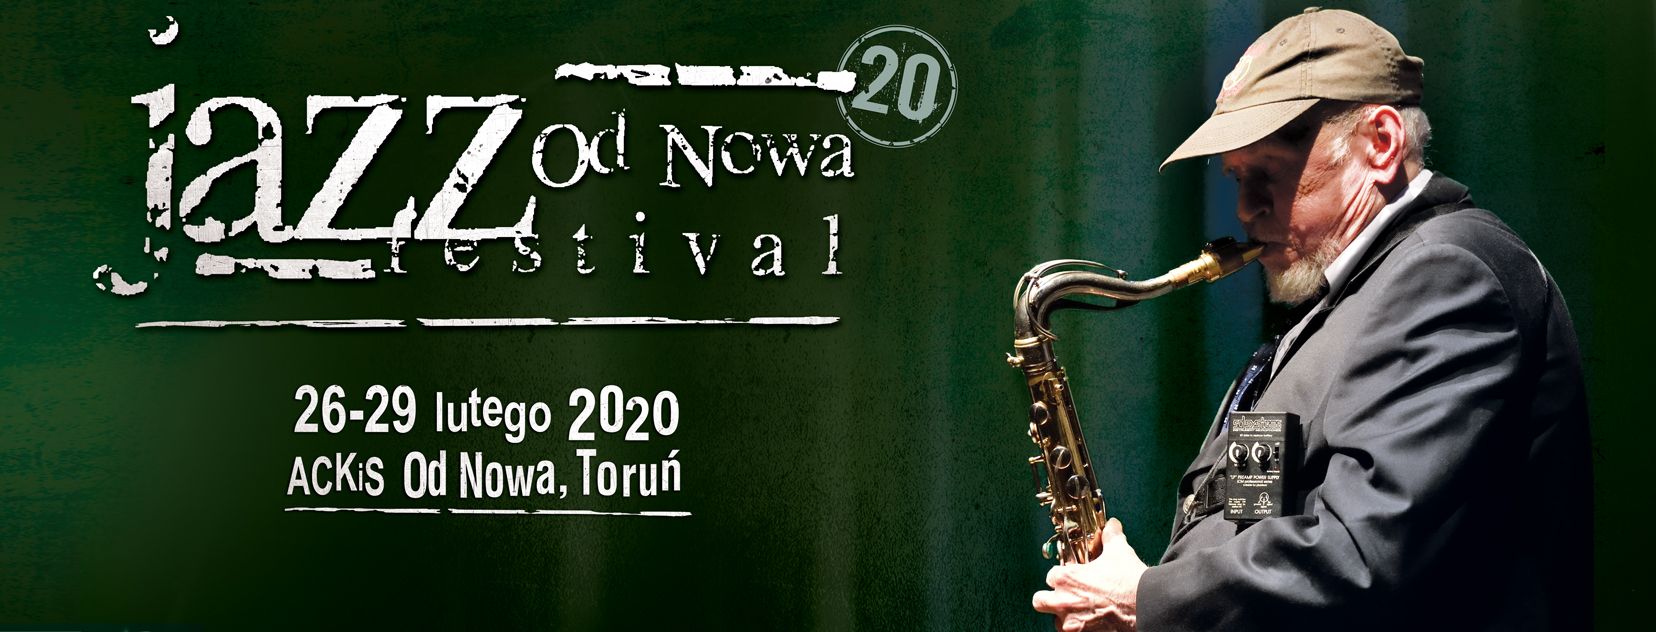 JAZZ Od Nowa Festival 2020